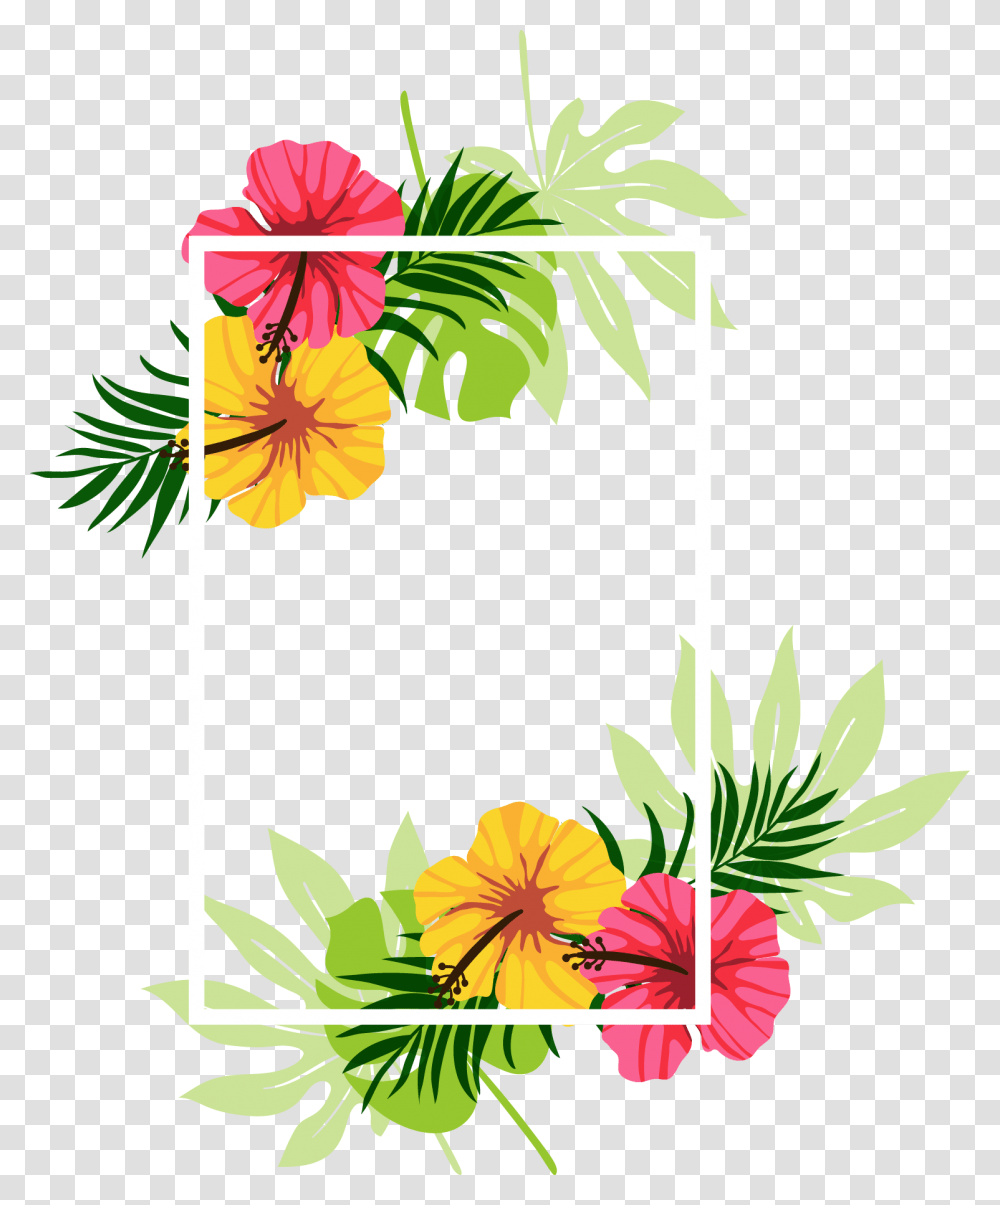 Flower, Plant, Floral Design Transparent Png